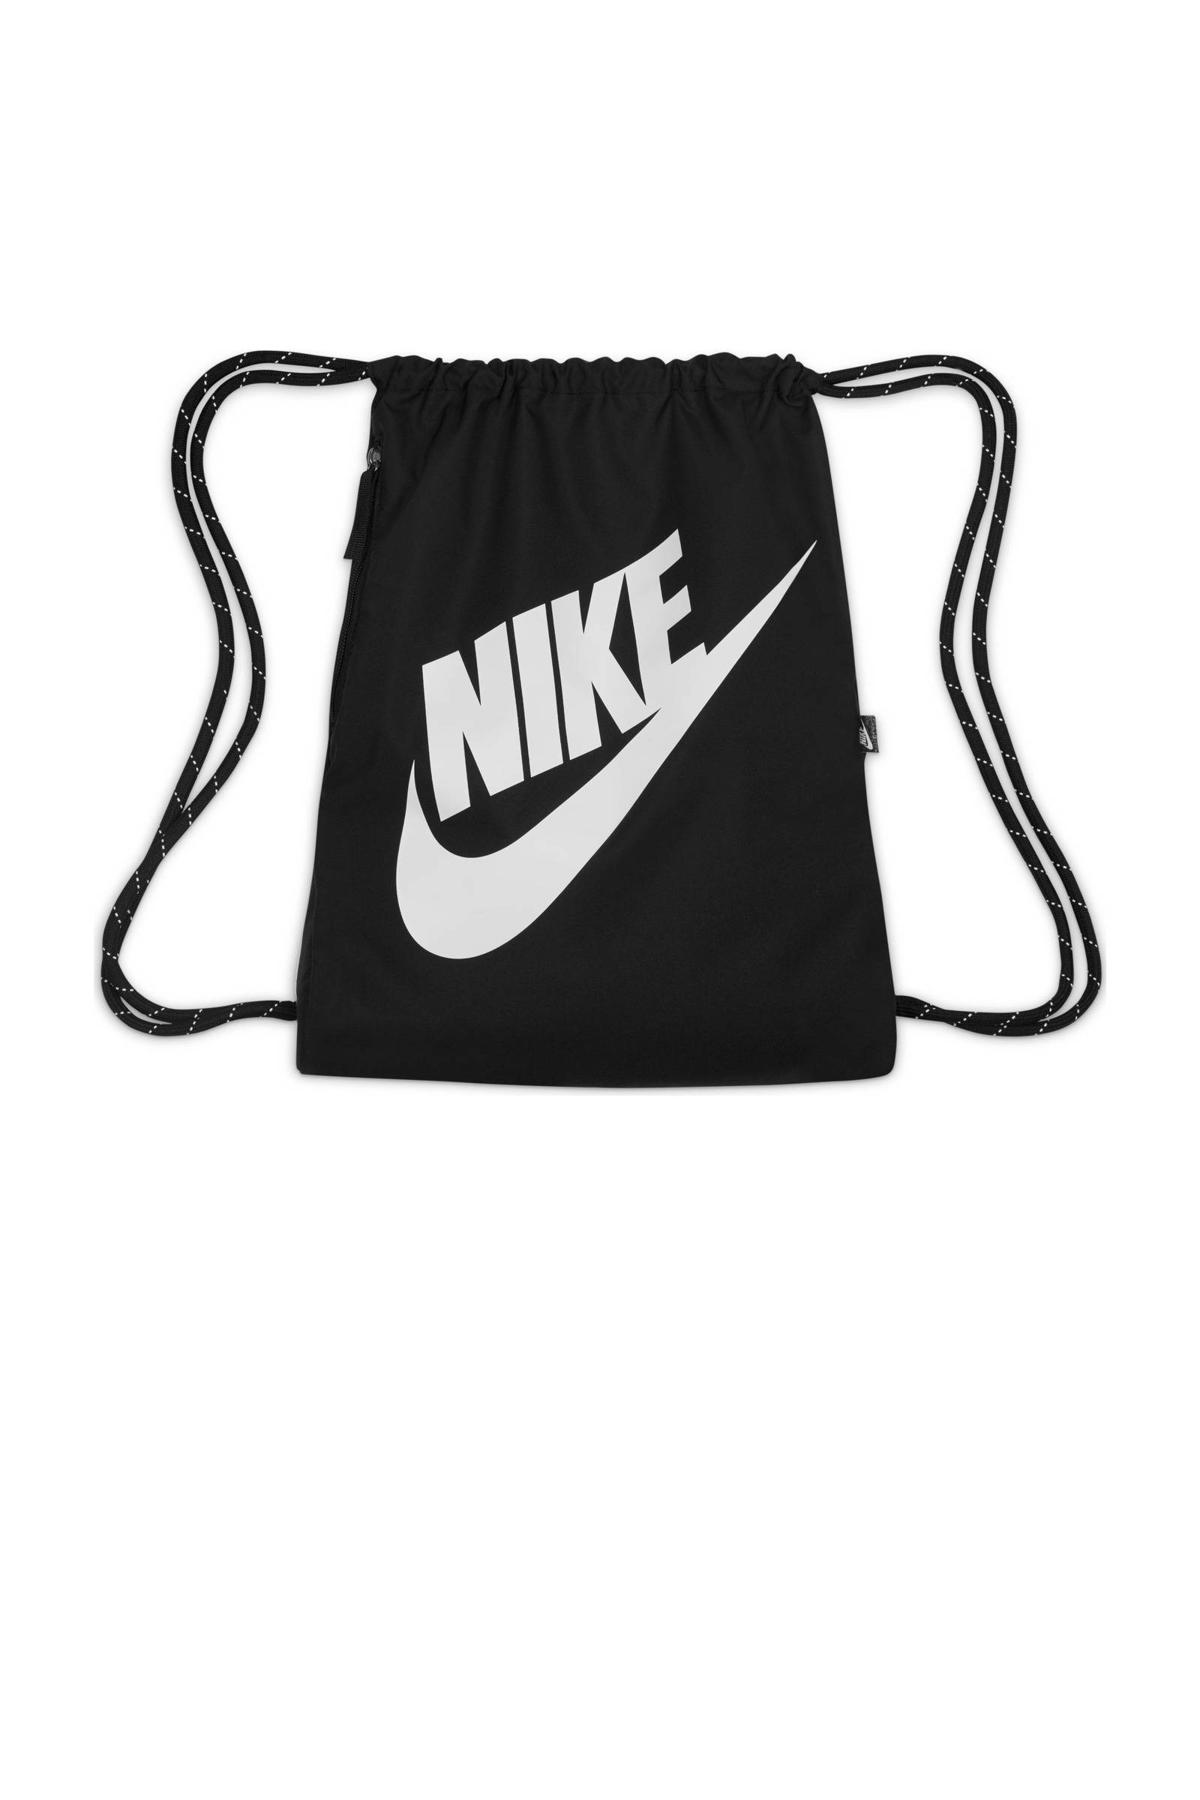 ventilatie Roestig paneel Nike sporttas 13L zwart/wit | wehkamp